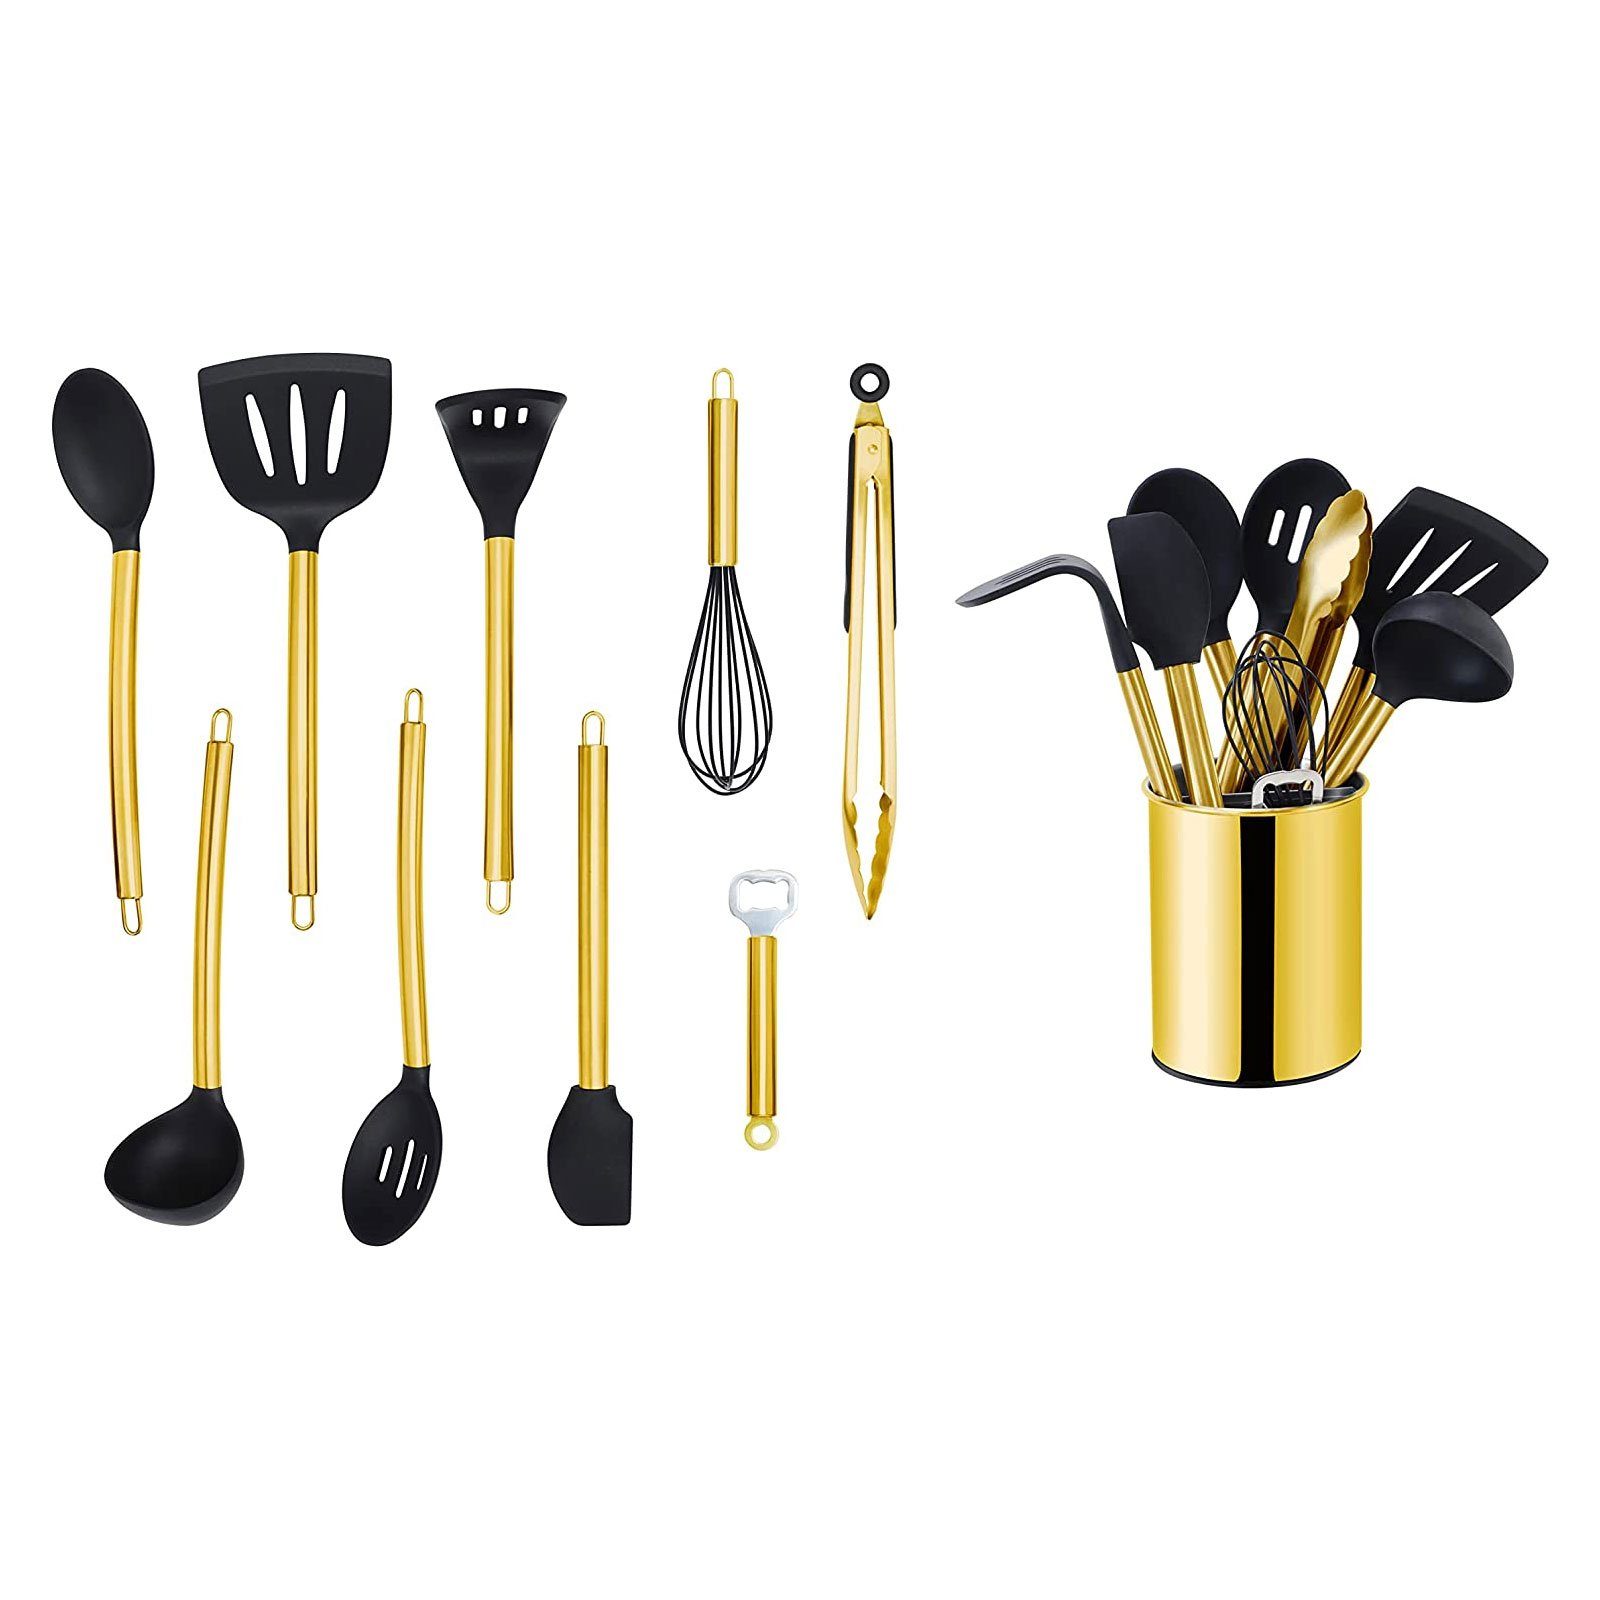 Gold Küchenorganizer-Set, Kochbesteck mit Edelstahlgriff, mit Kochset Utensilienhalter, ECHTWERK